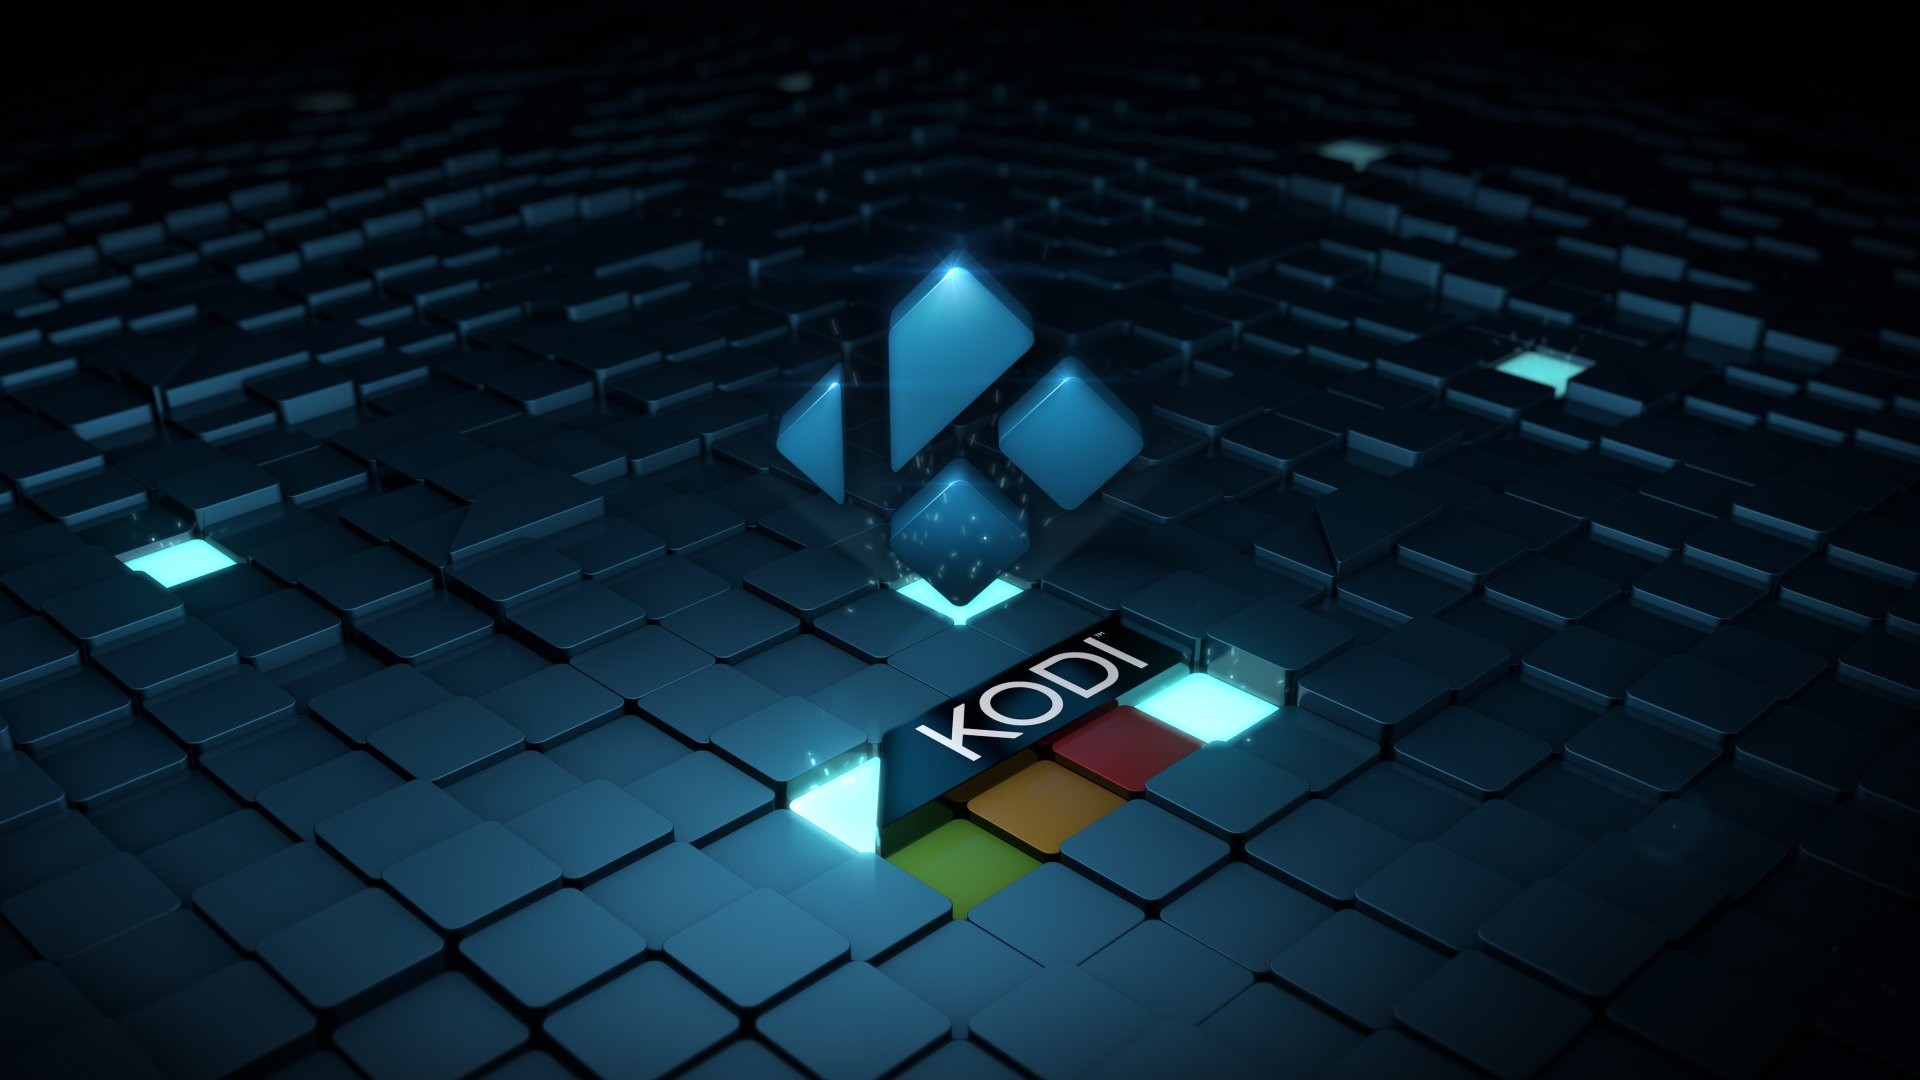 How to Change Background on Kodi? - Kodiprofy